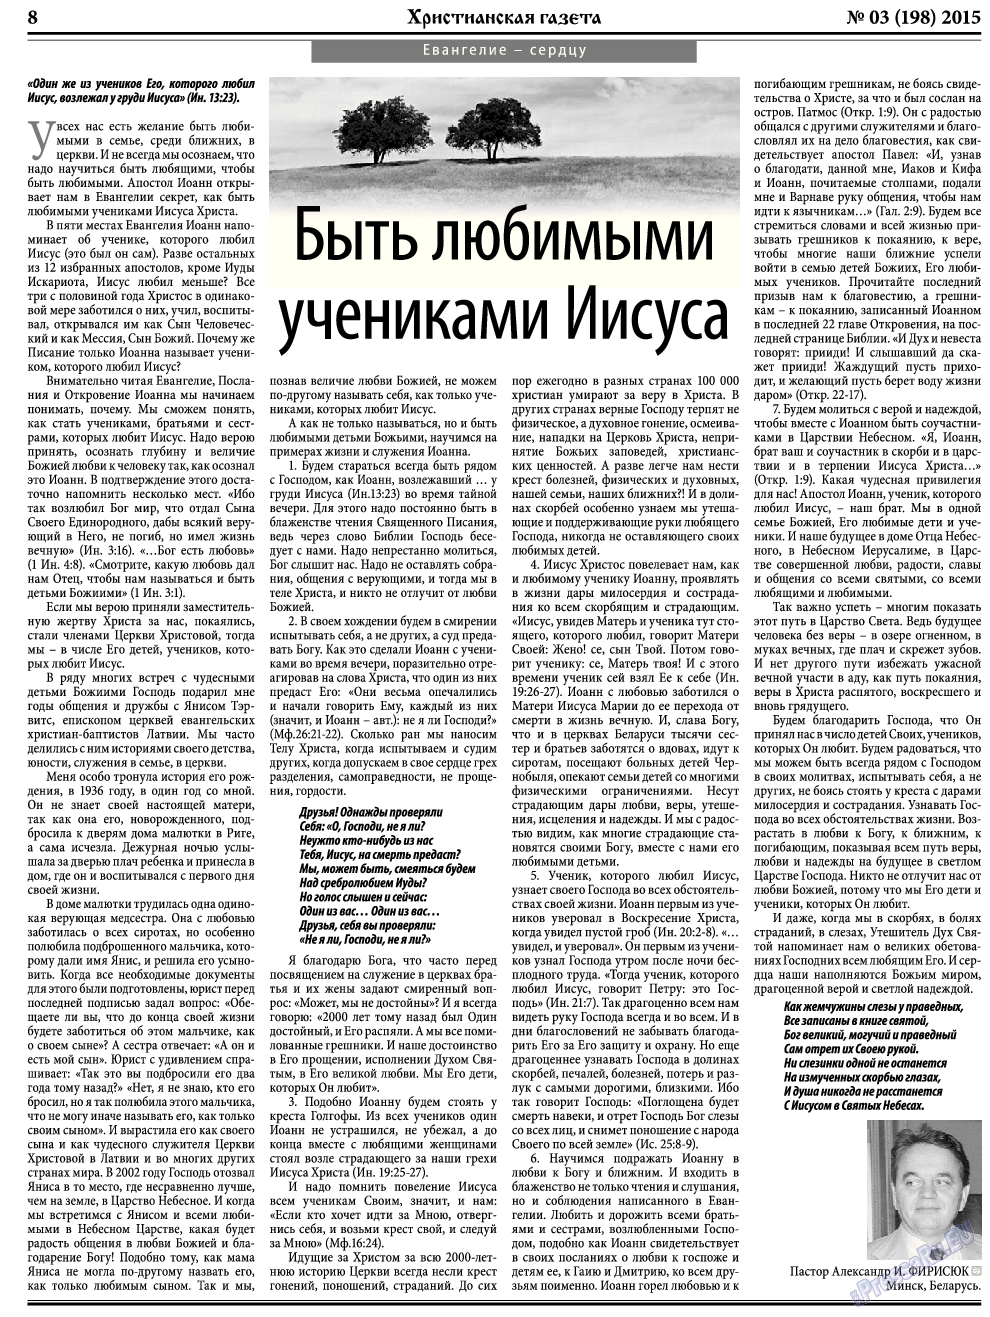 Христианская газета, газета. 2015 №3 стр.8